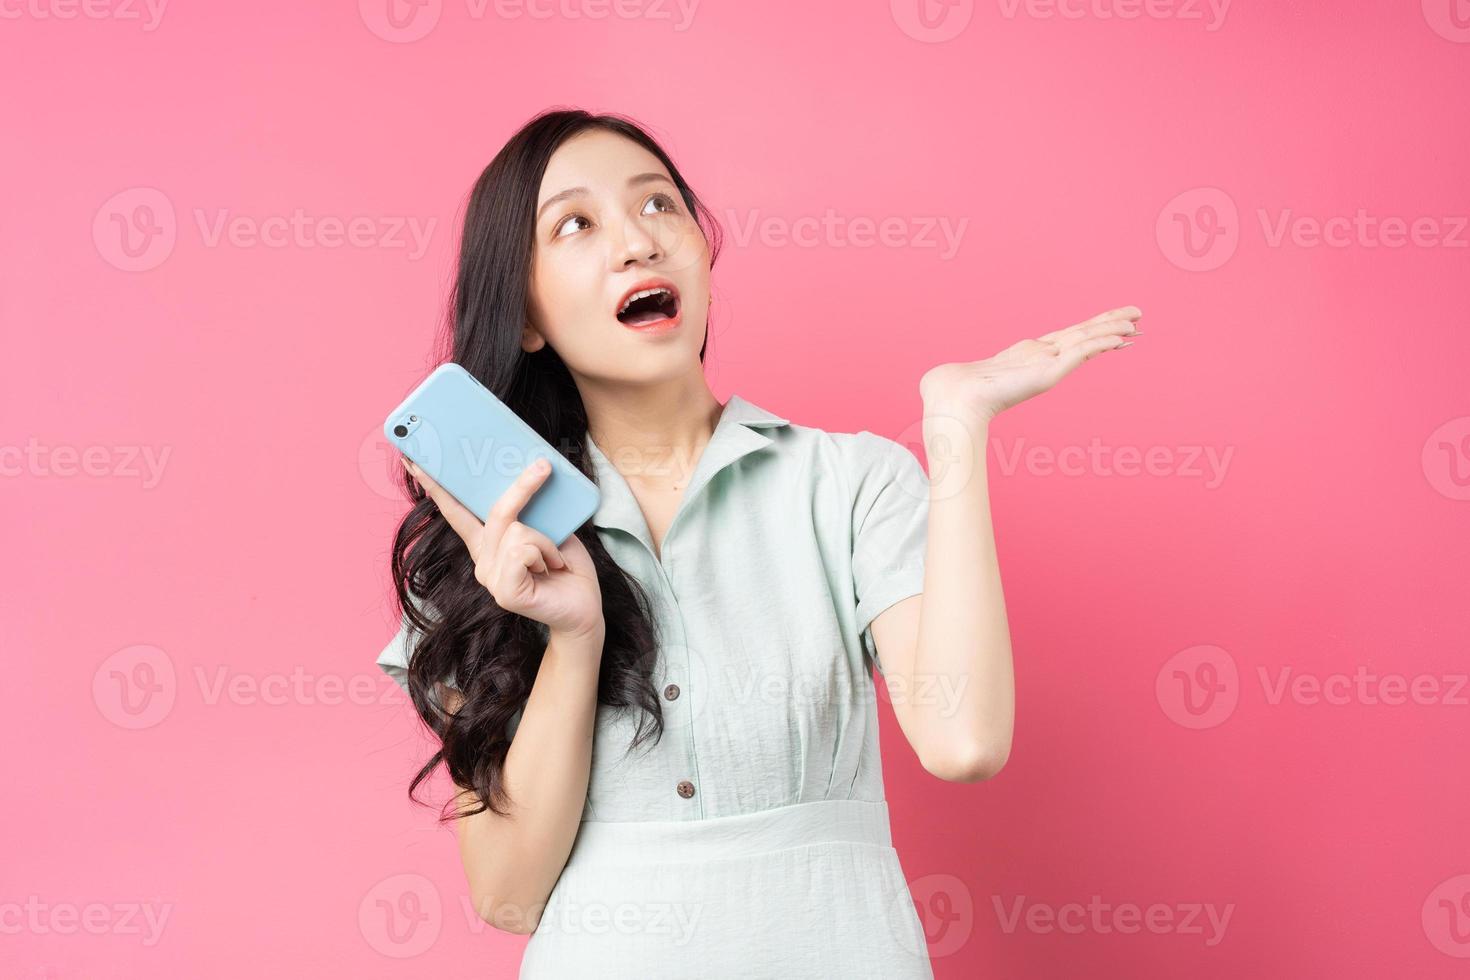 jovem asiática segurando um telefone e olhando para cima com entusiasmo foto